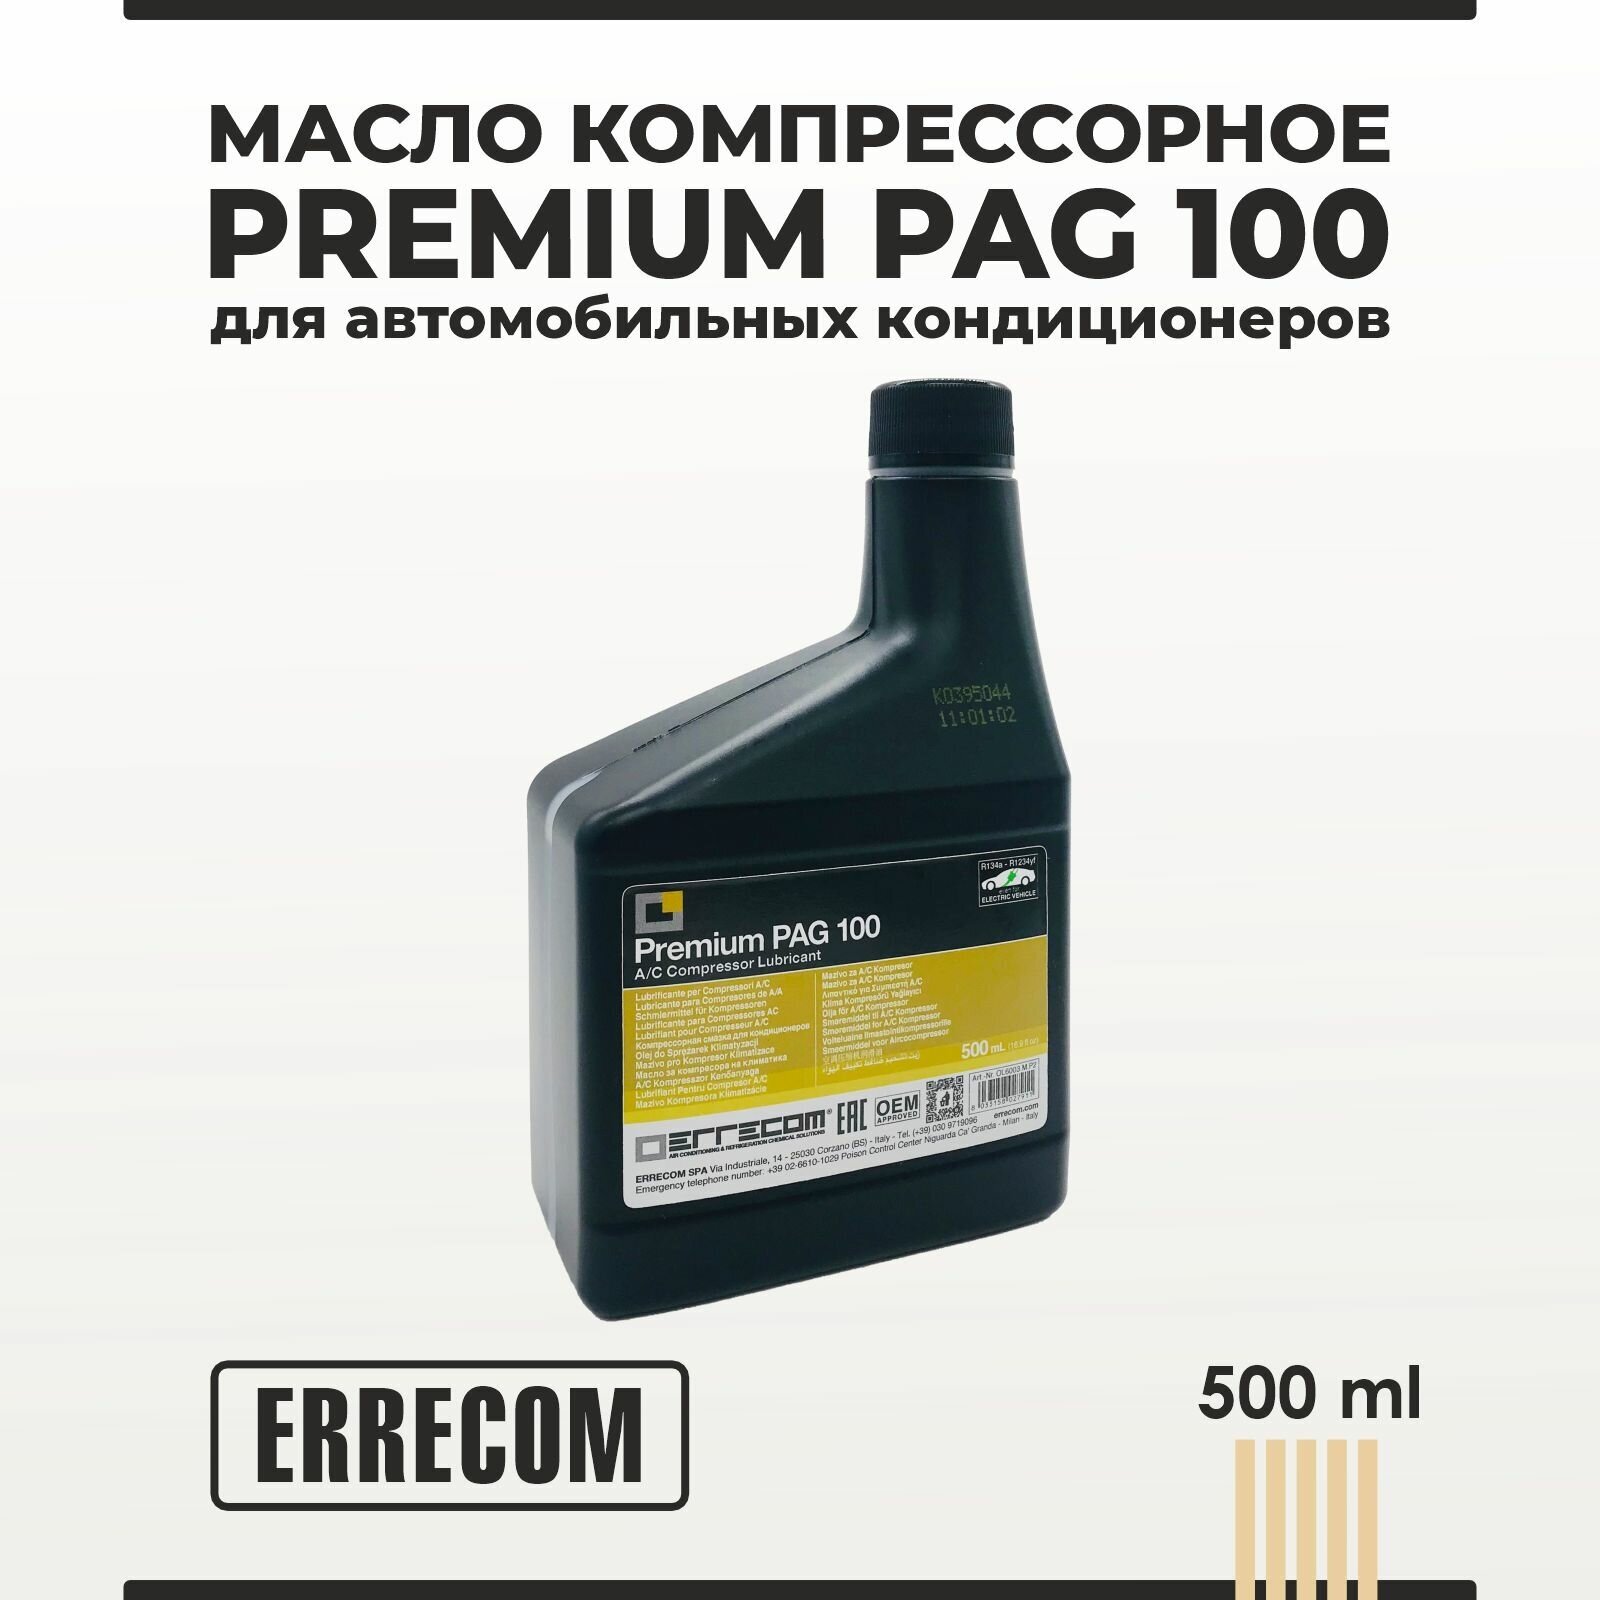 Масло компрессорное PREMIUM PAG 100 ERRECOM для автомобильных кондиционеров 500 мл